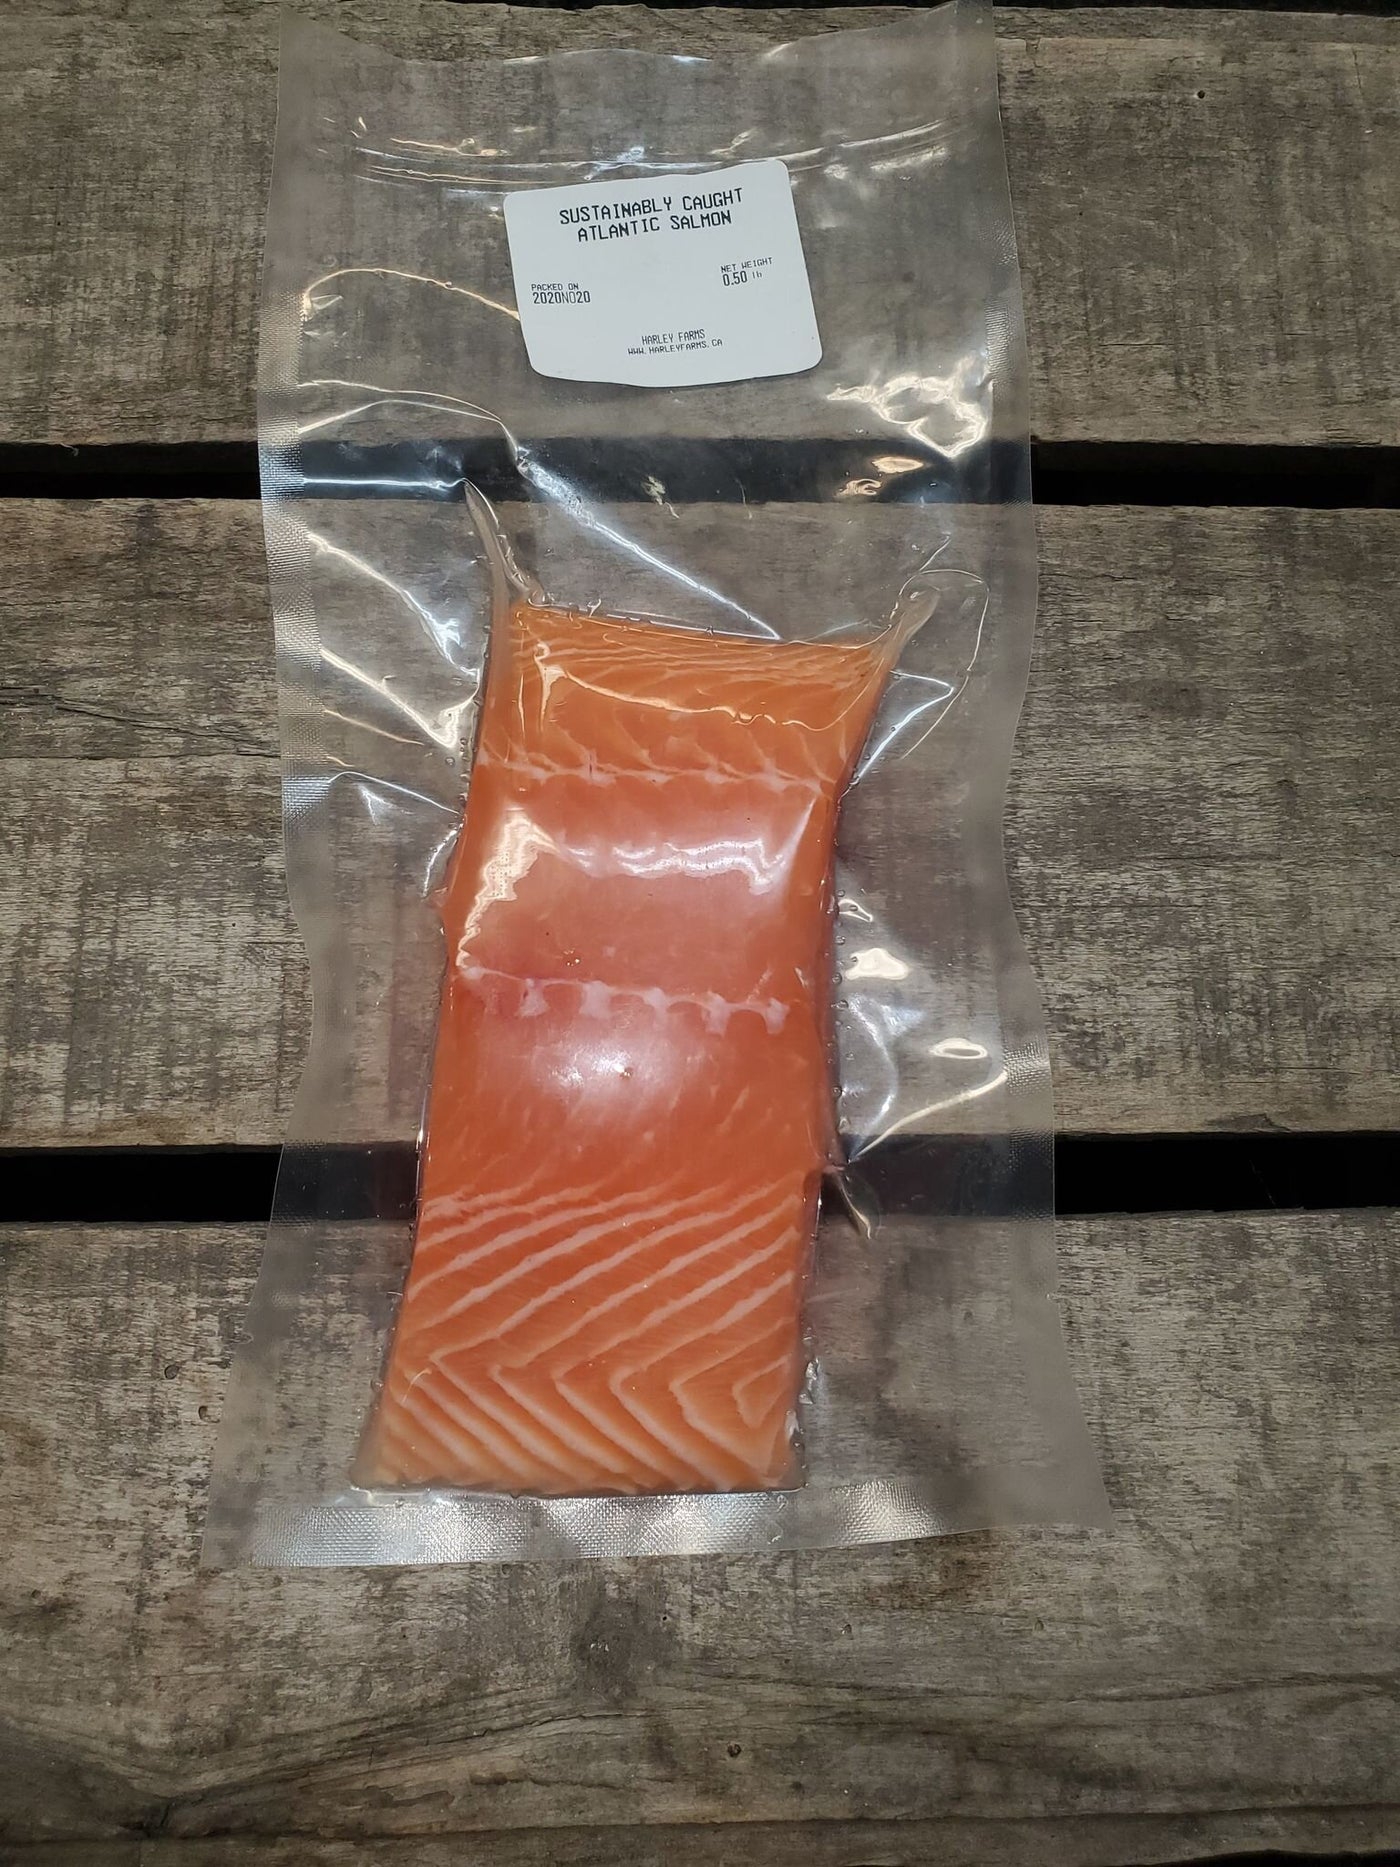 Sustainable Salmon